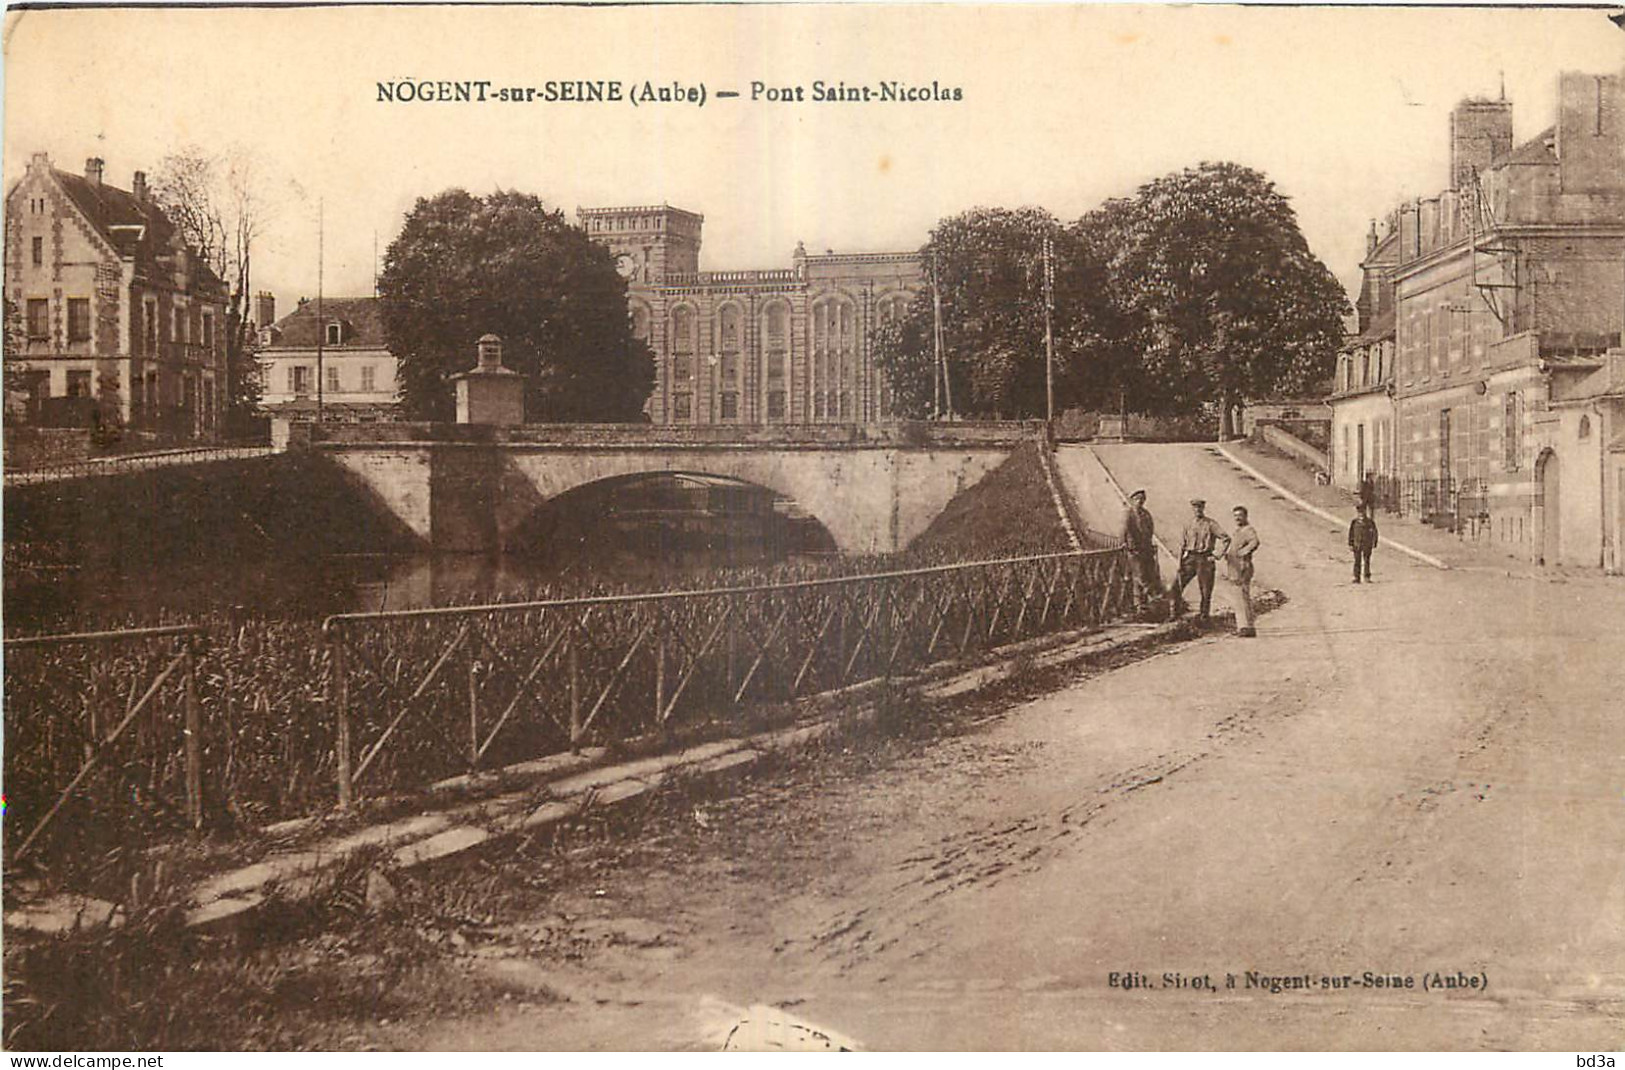 10 - NOGENT SUR SEINE  - PONT SAINT NICOLAS - Edit. Sirot à Nogent sur Seine